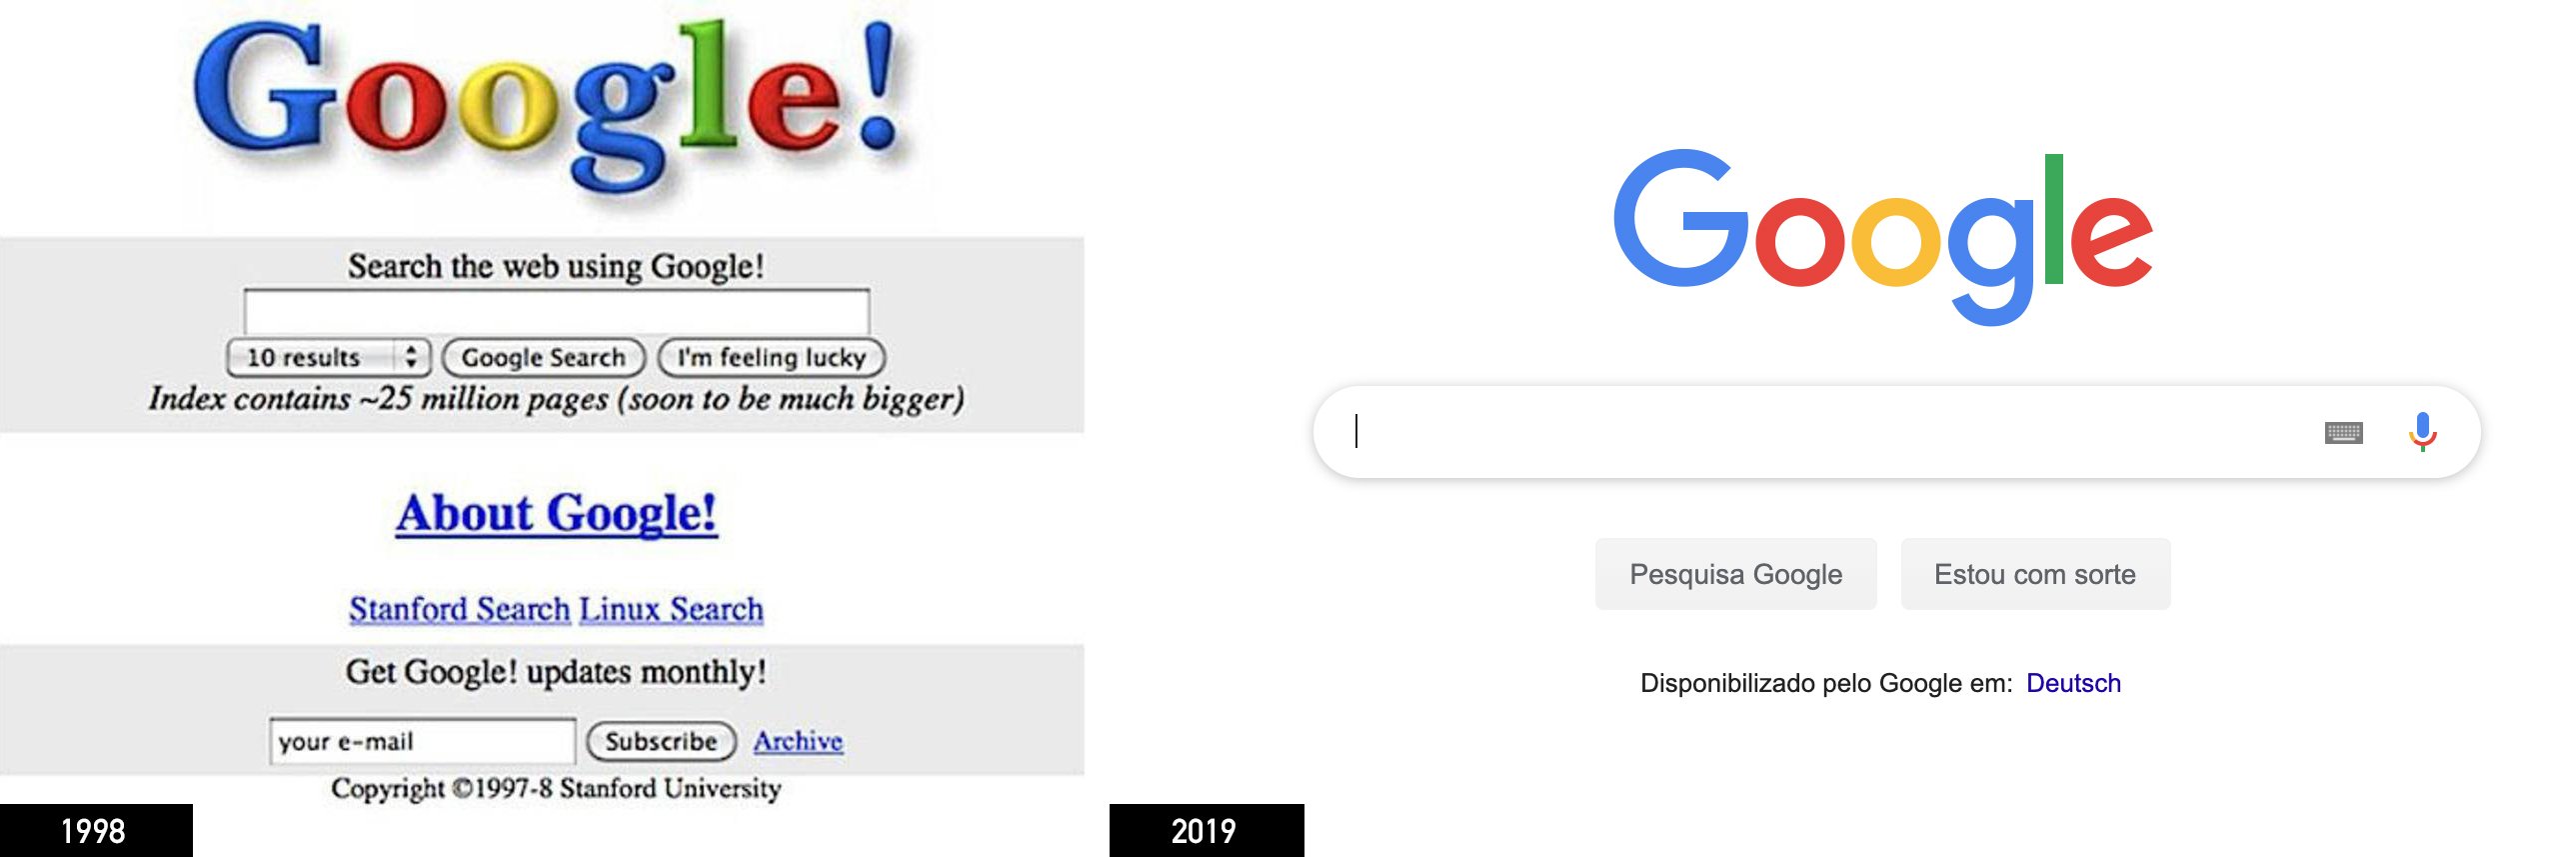 Google en 1998 y en 2019